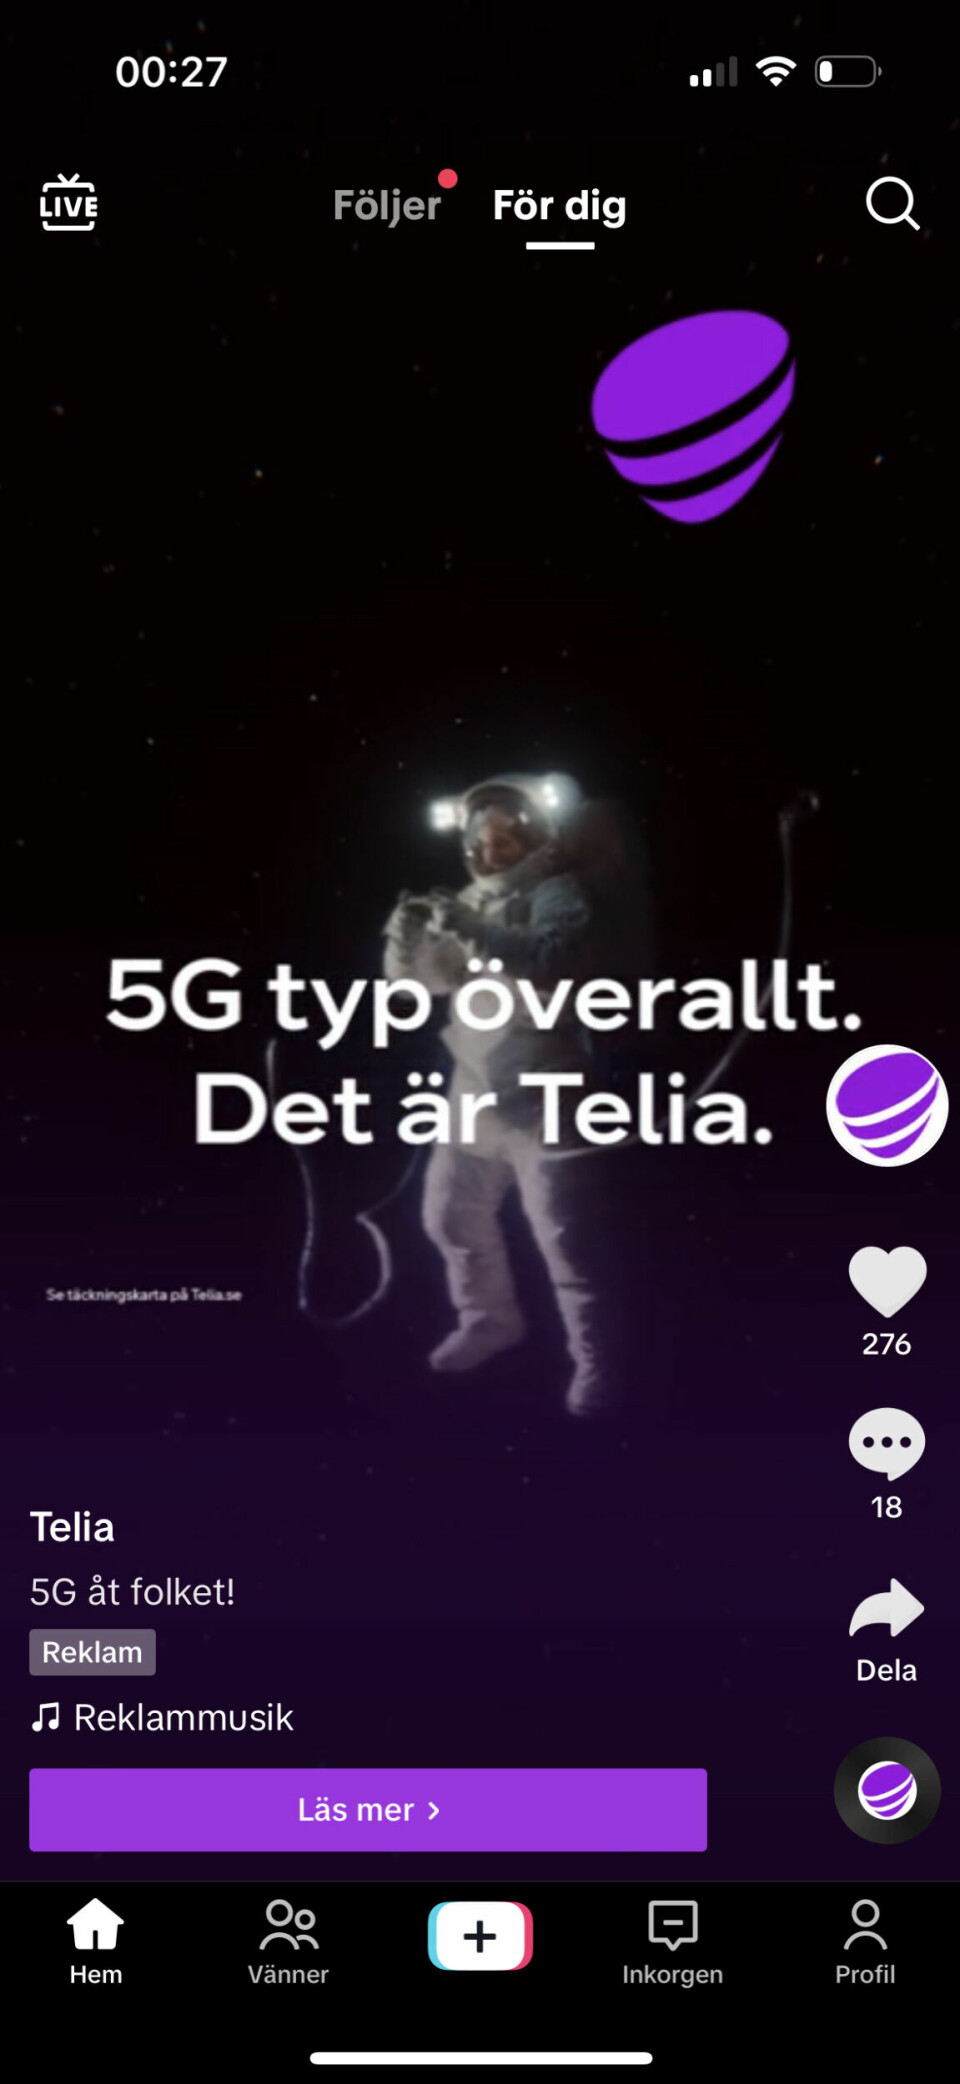 Telia har god 5G-täckning, men ändå inte 'typ överallt'.